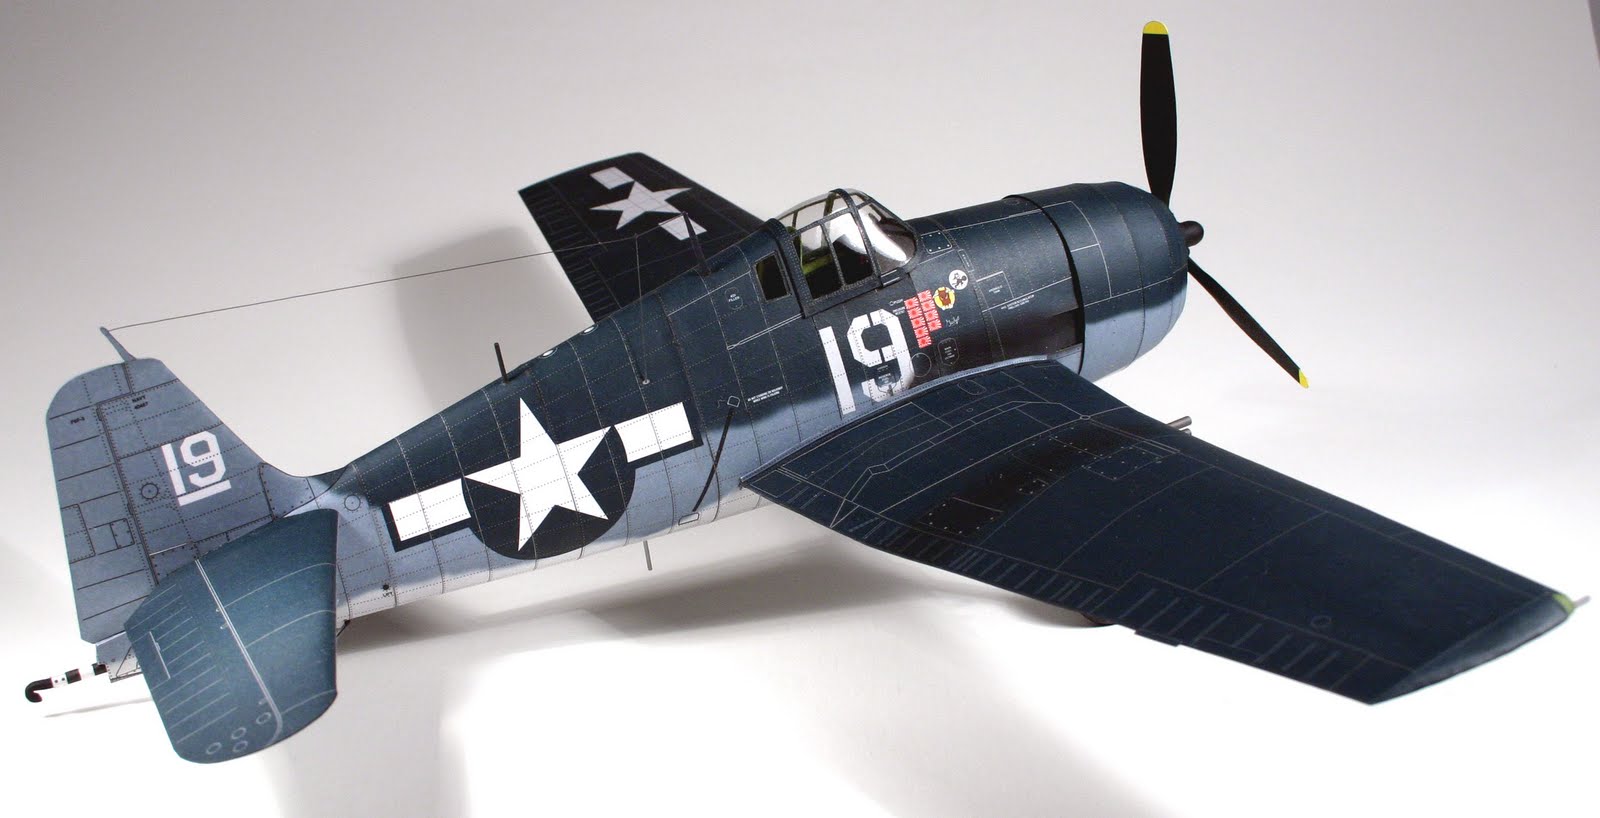 ... War birds: P 47 The Jug, F4U Corsair and The F6F Hellcat E-Conversions